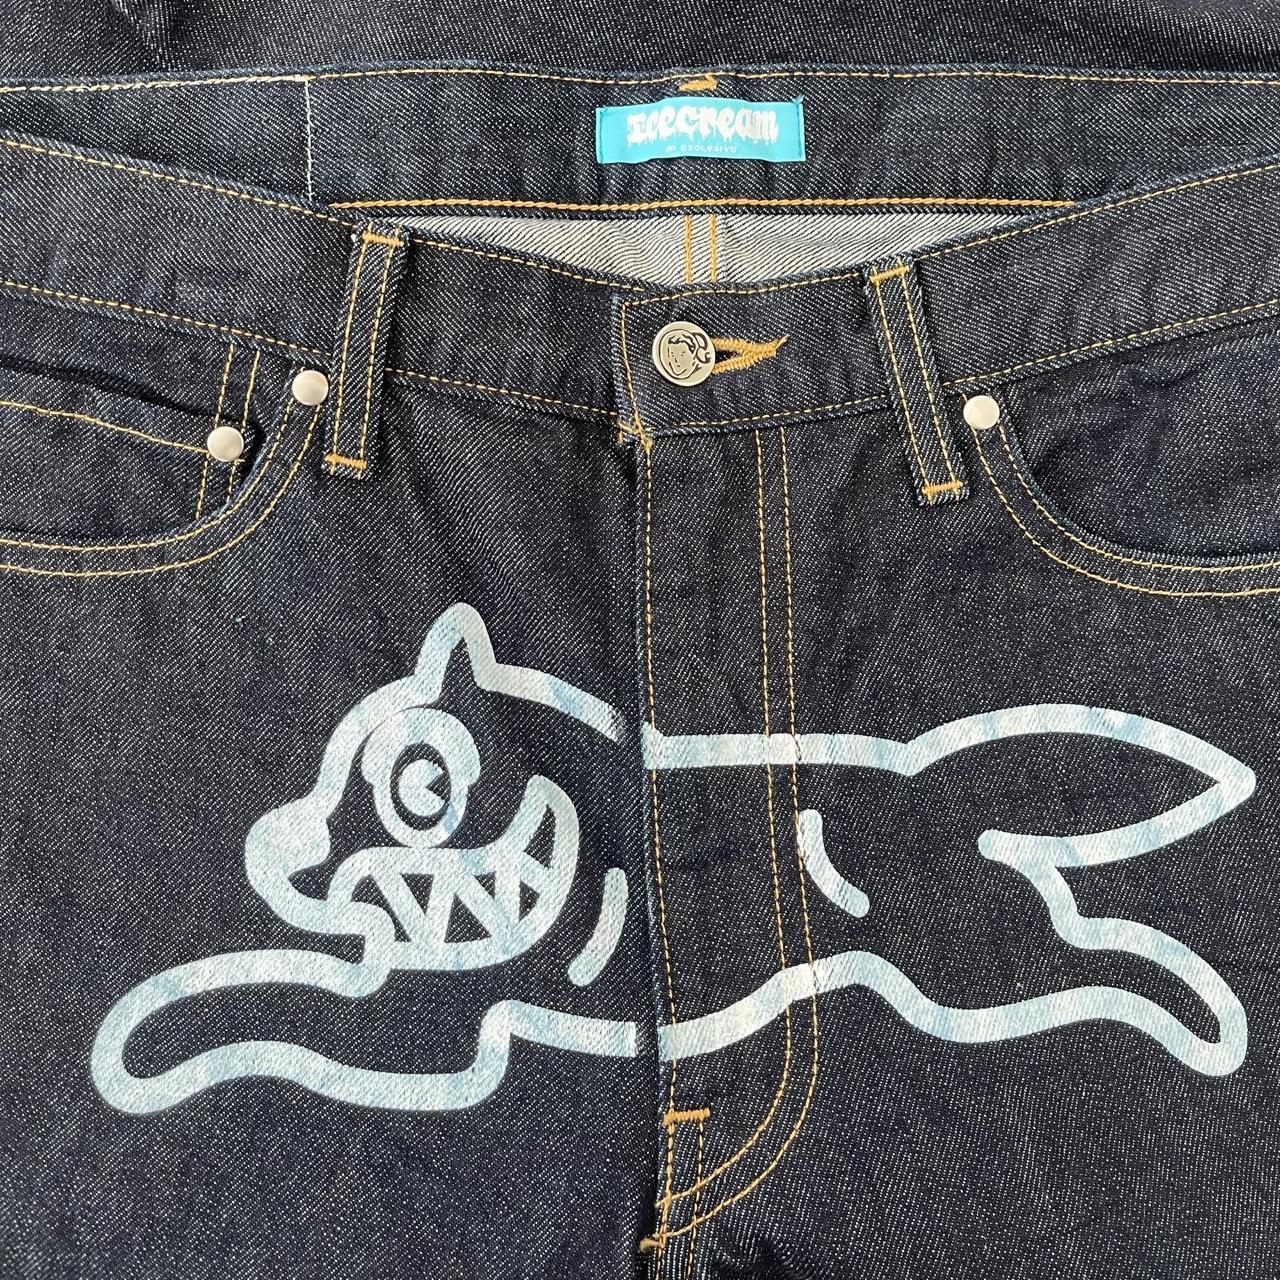 BBC Icecream Running Dog Jeans - Known Source